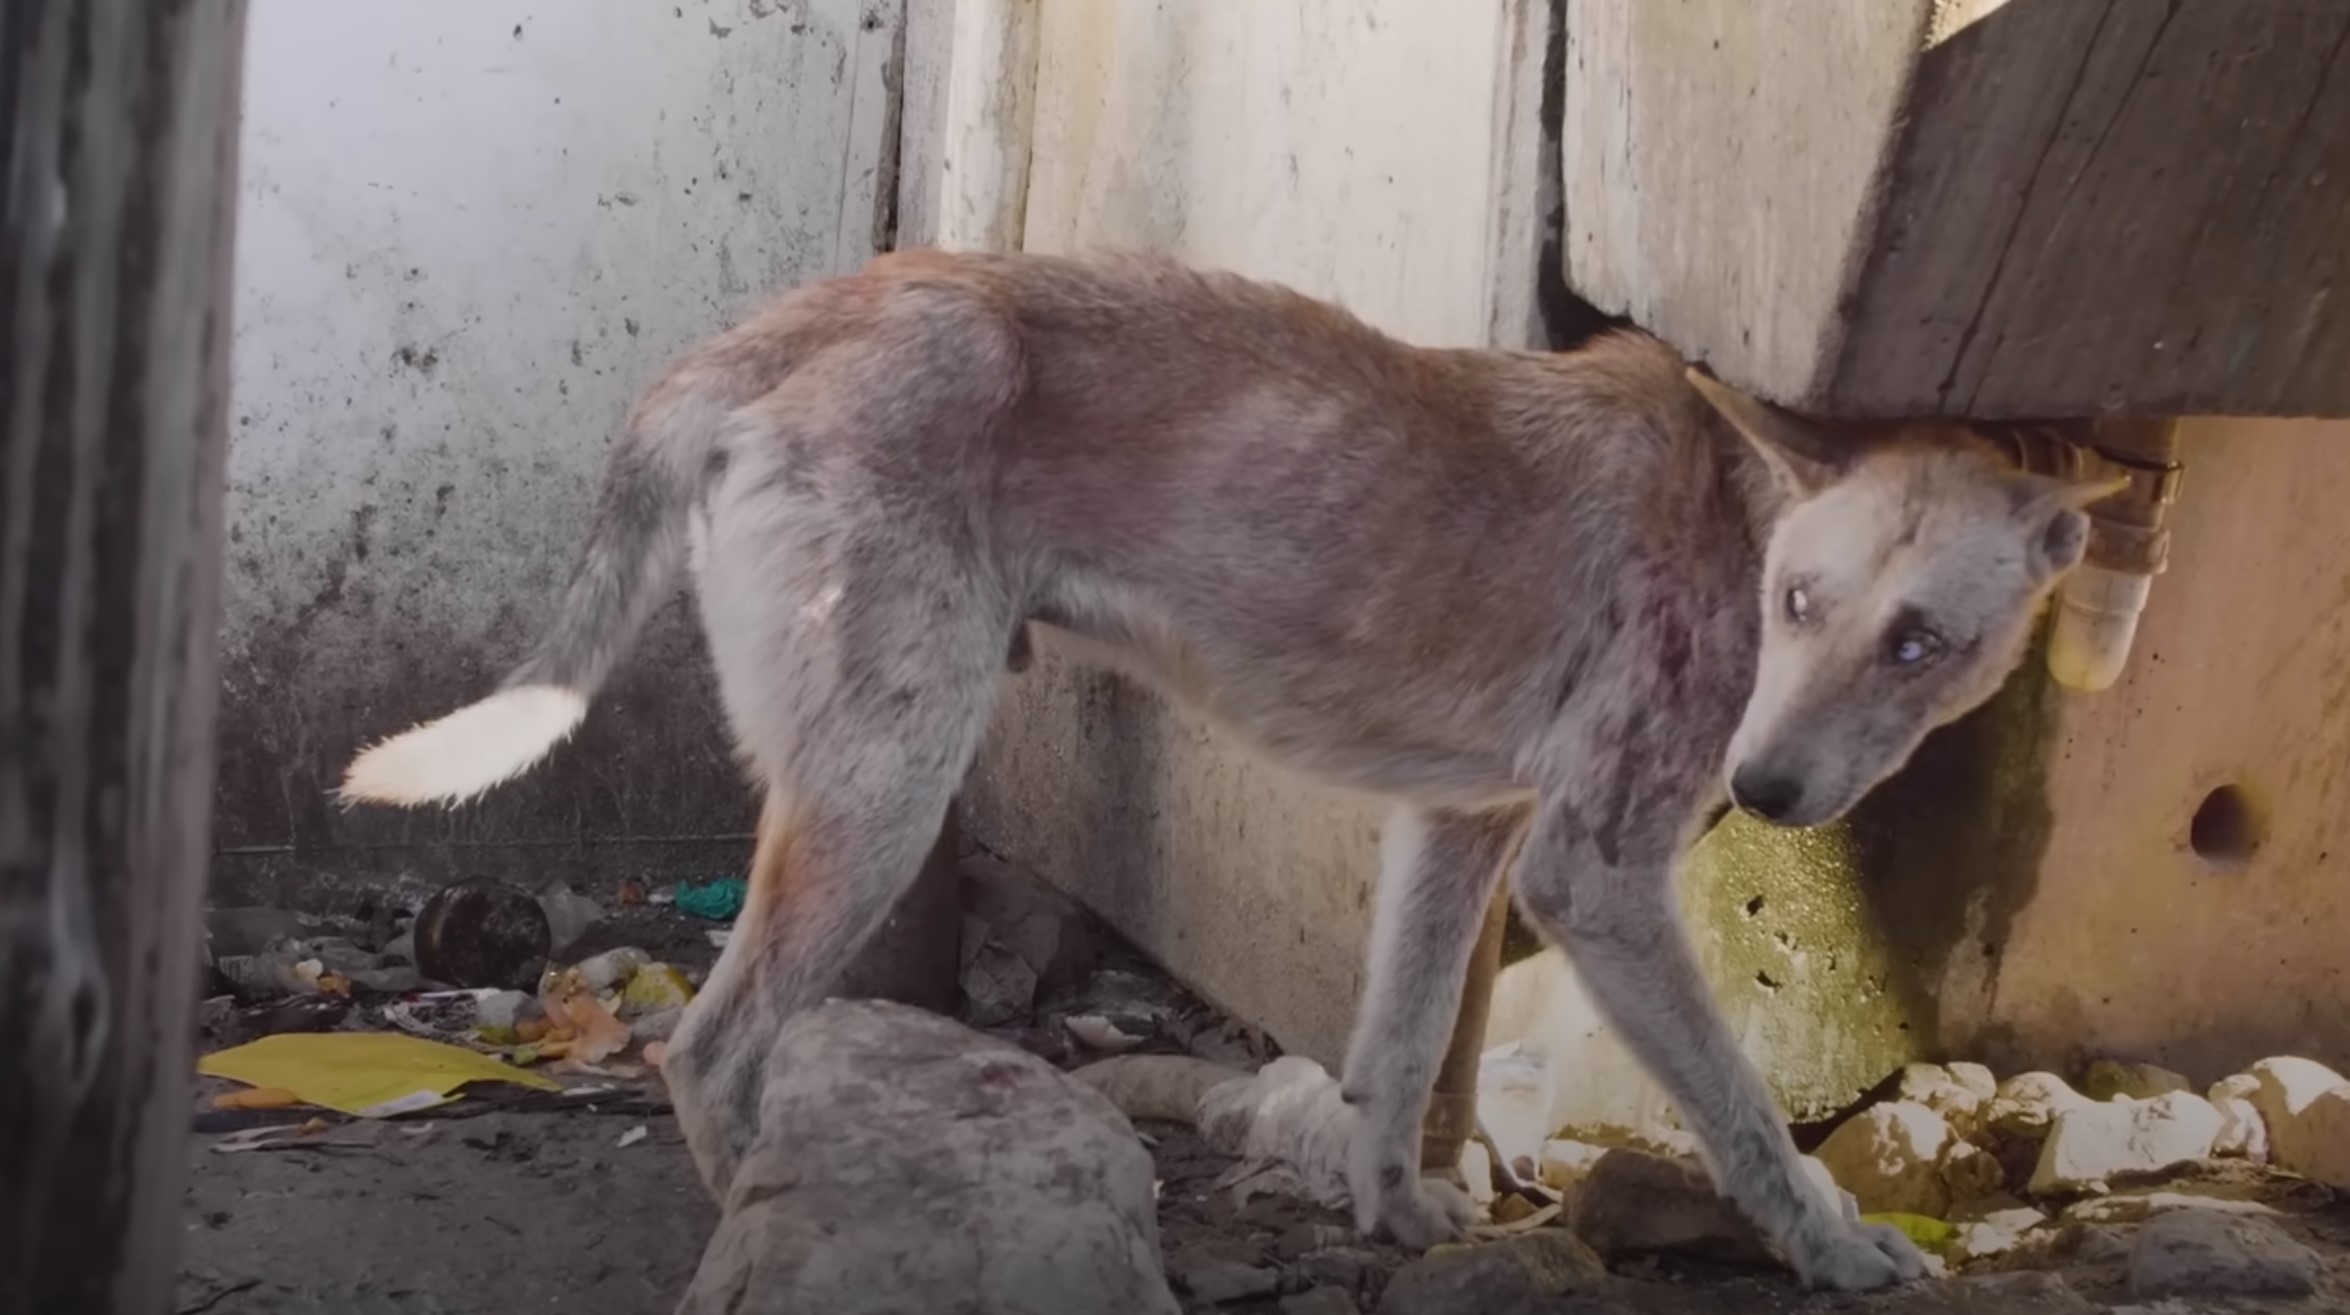 malnourished abandoned dog